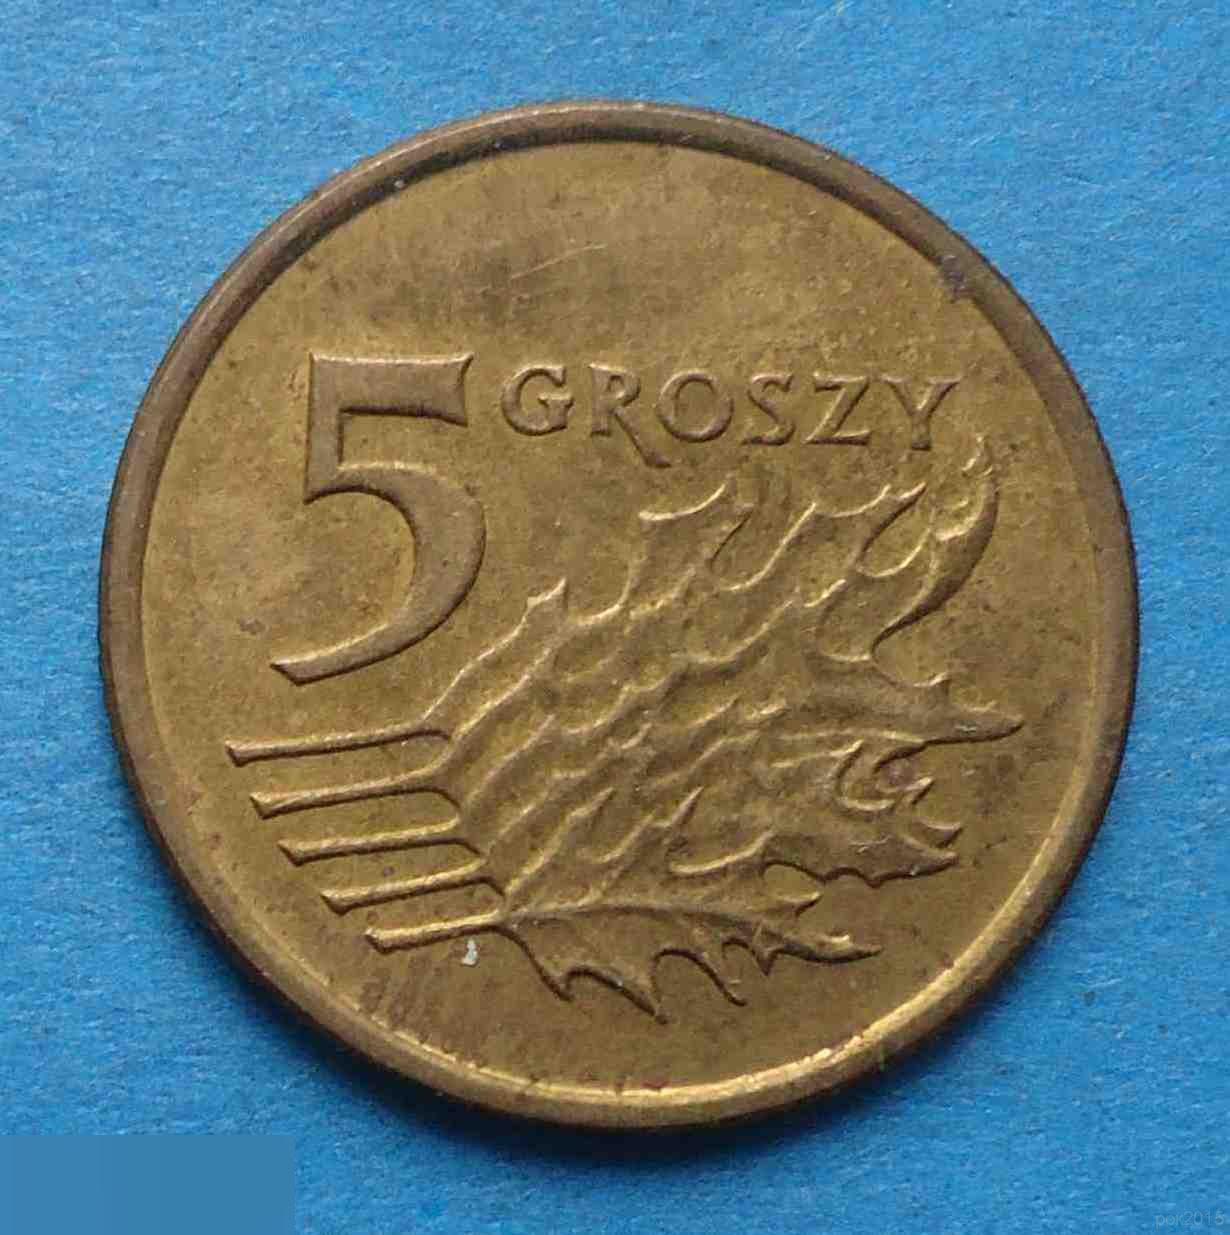 5 грош Польша 2002 год